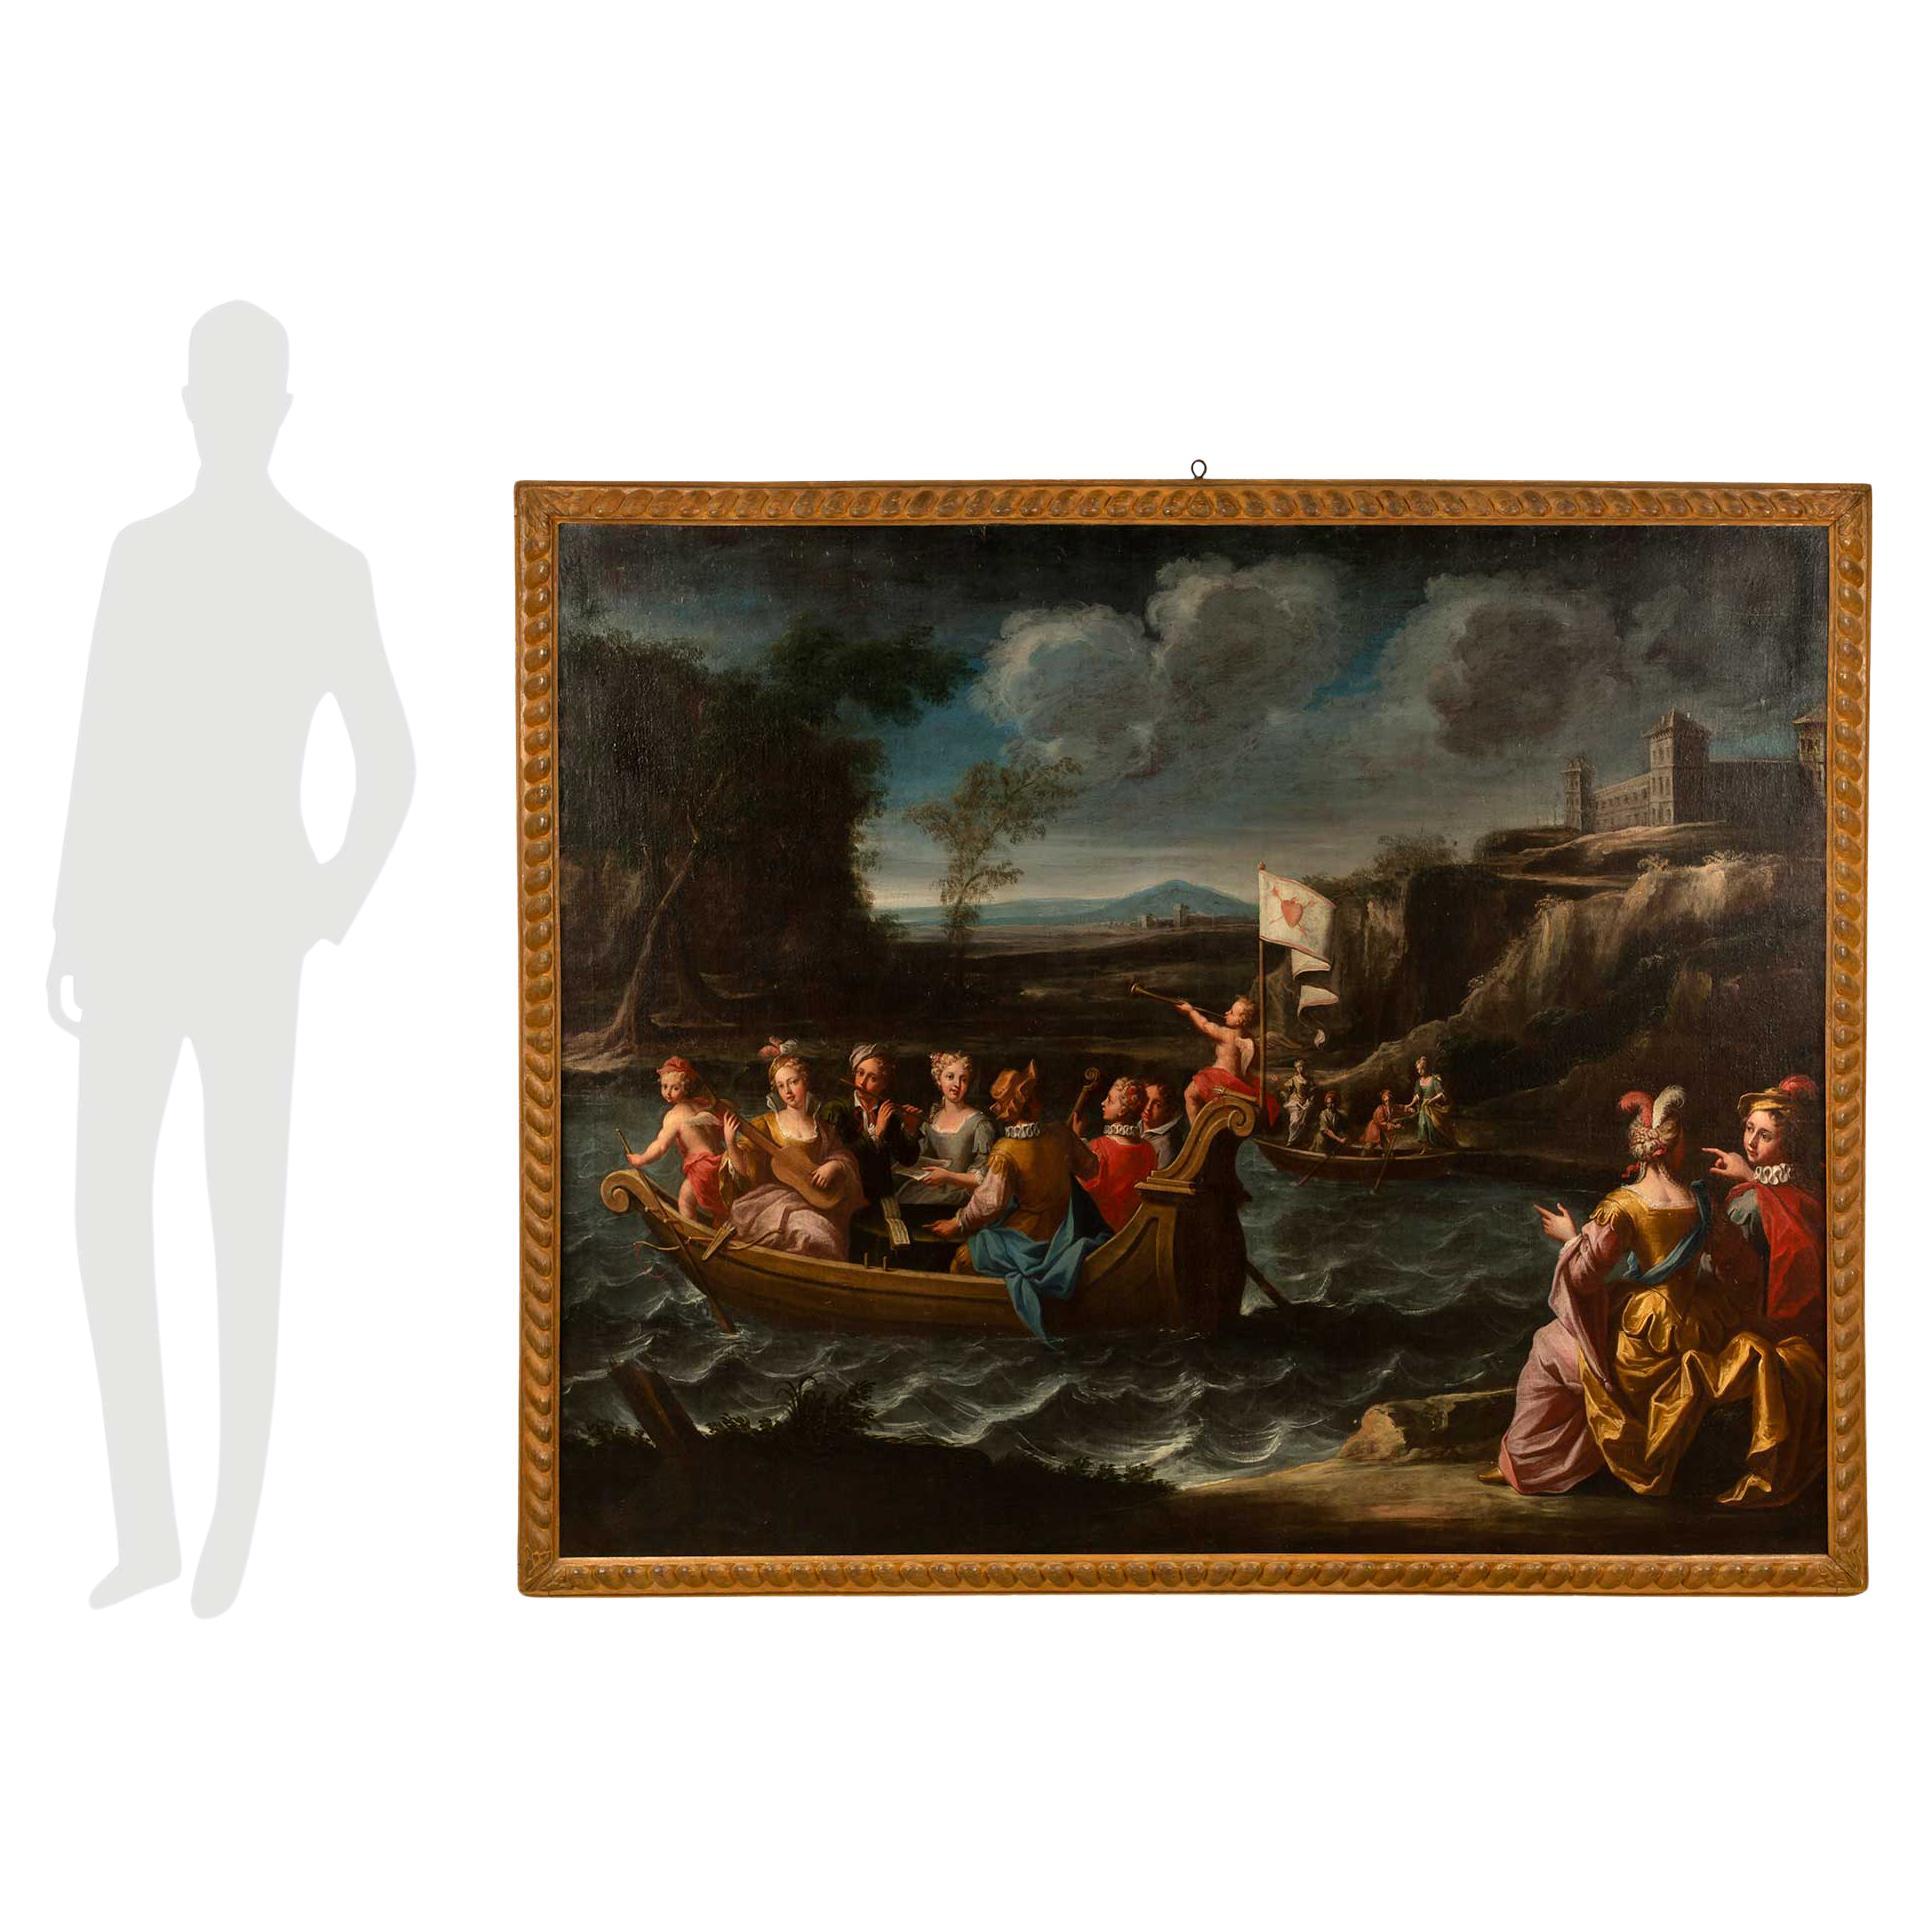 Une sensationnelle huile sur toile italienne du XVIIIe siècle à grande échelle, provenant de la région du Piémont. Ce magnifique tableau est placé dans son cadre polychrome d'origine qui présente un joli motif perlé sculpté. Le tableau,